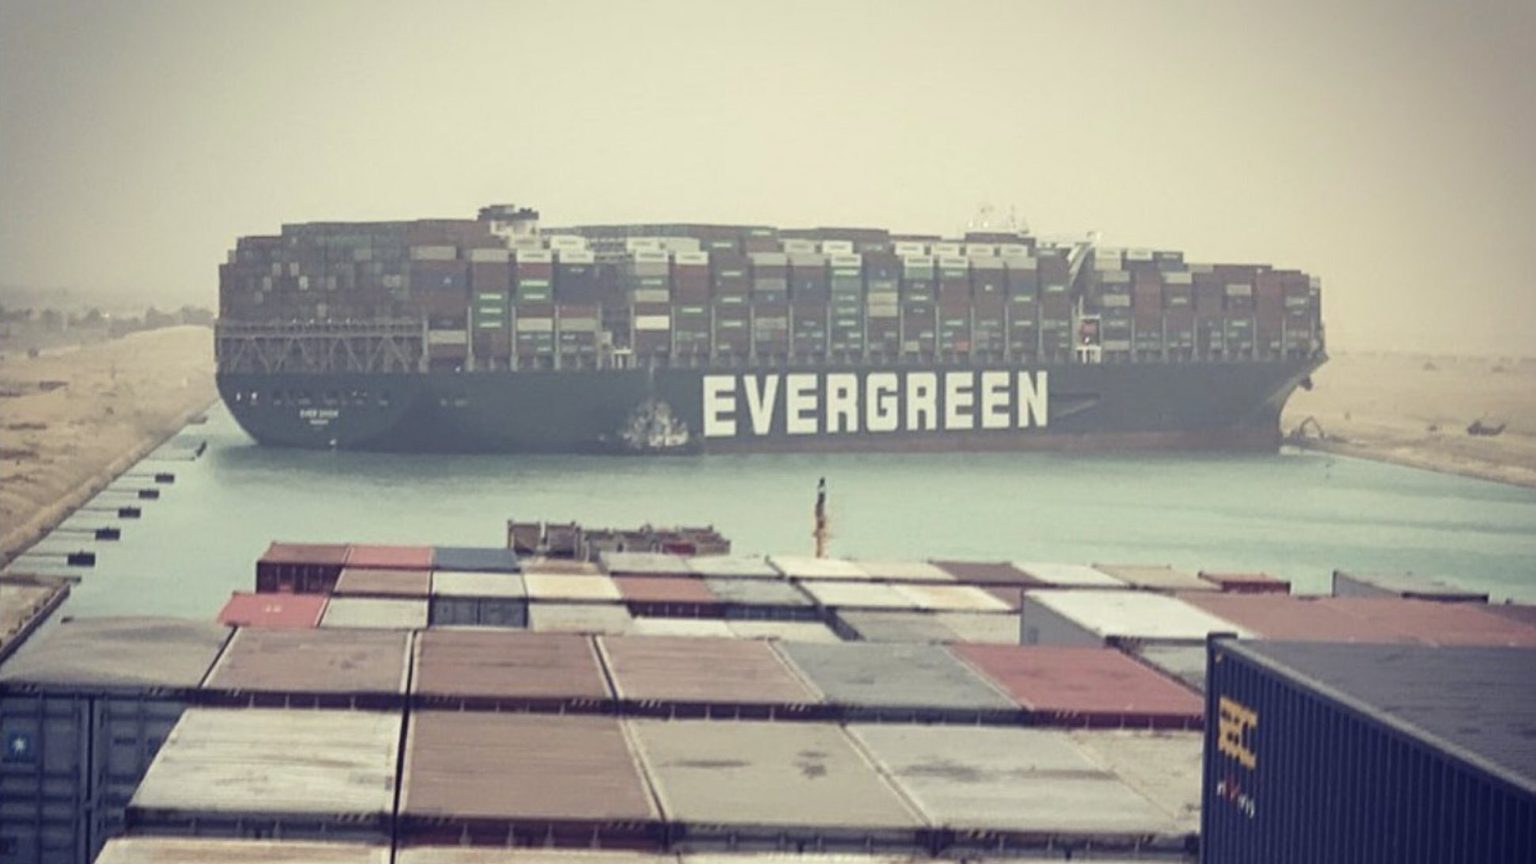 Egypt seizes vessel that blocked Suez Canal, seeks $900 million compensation